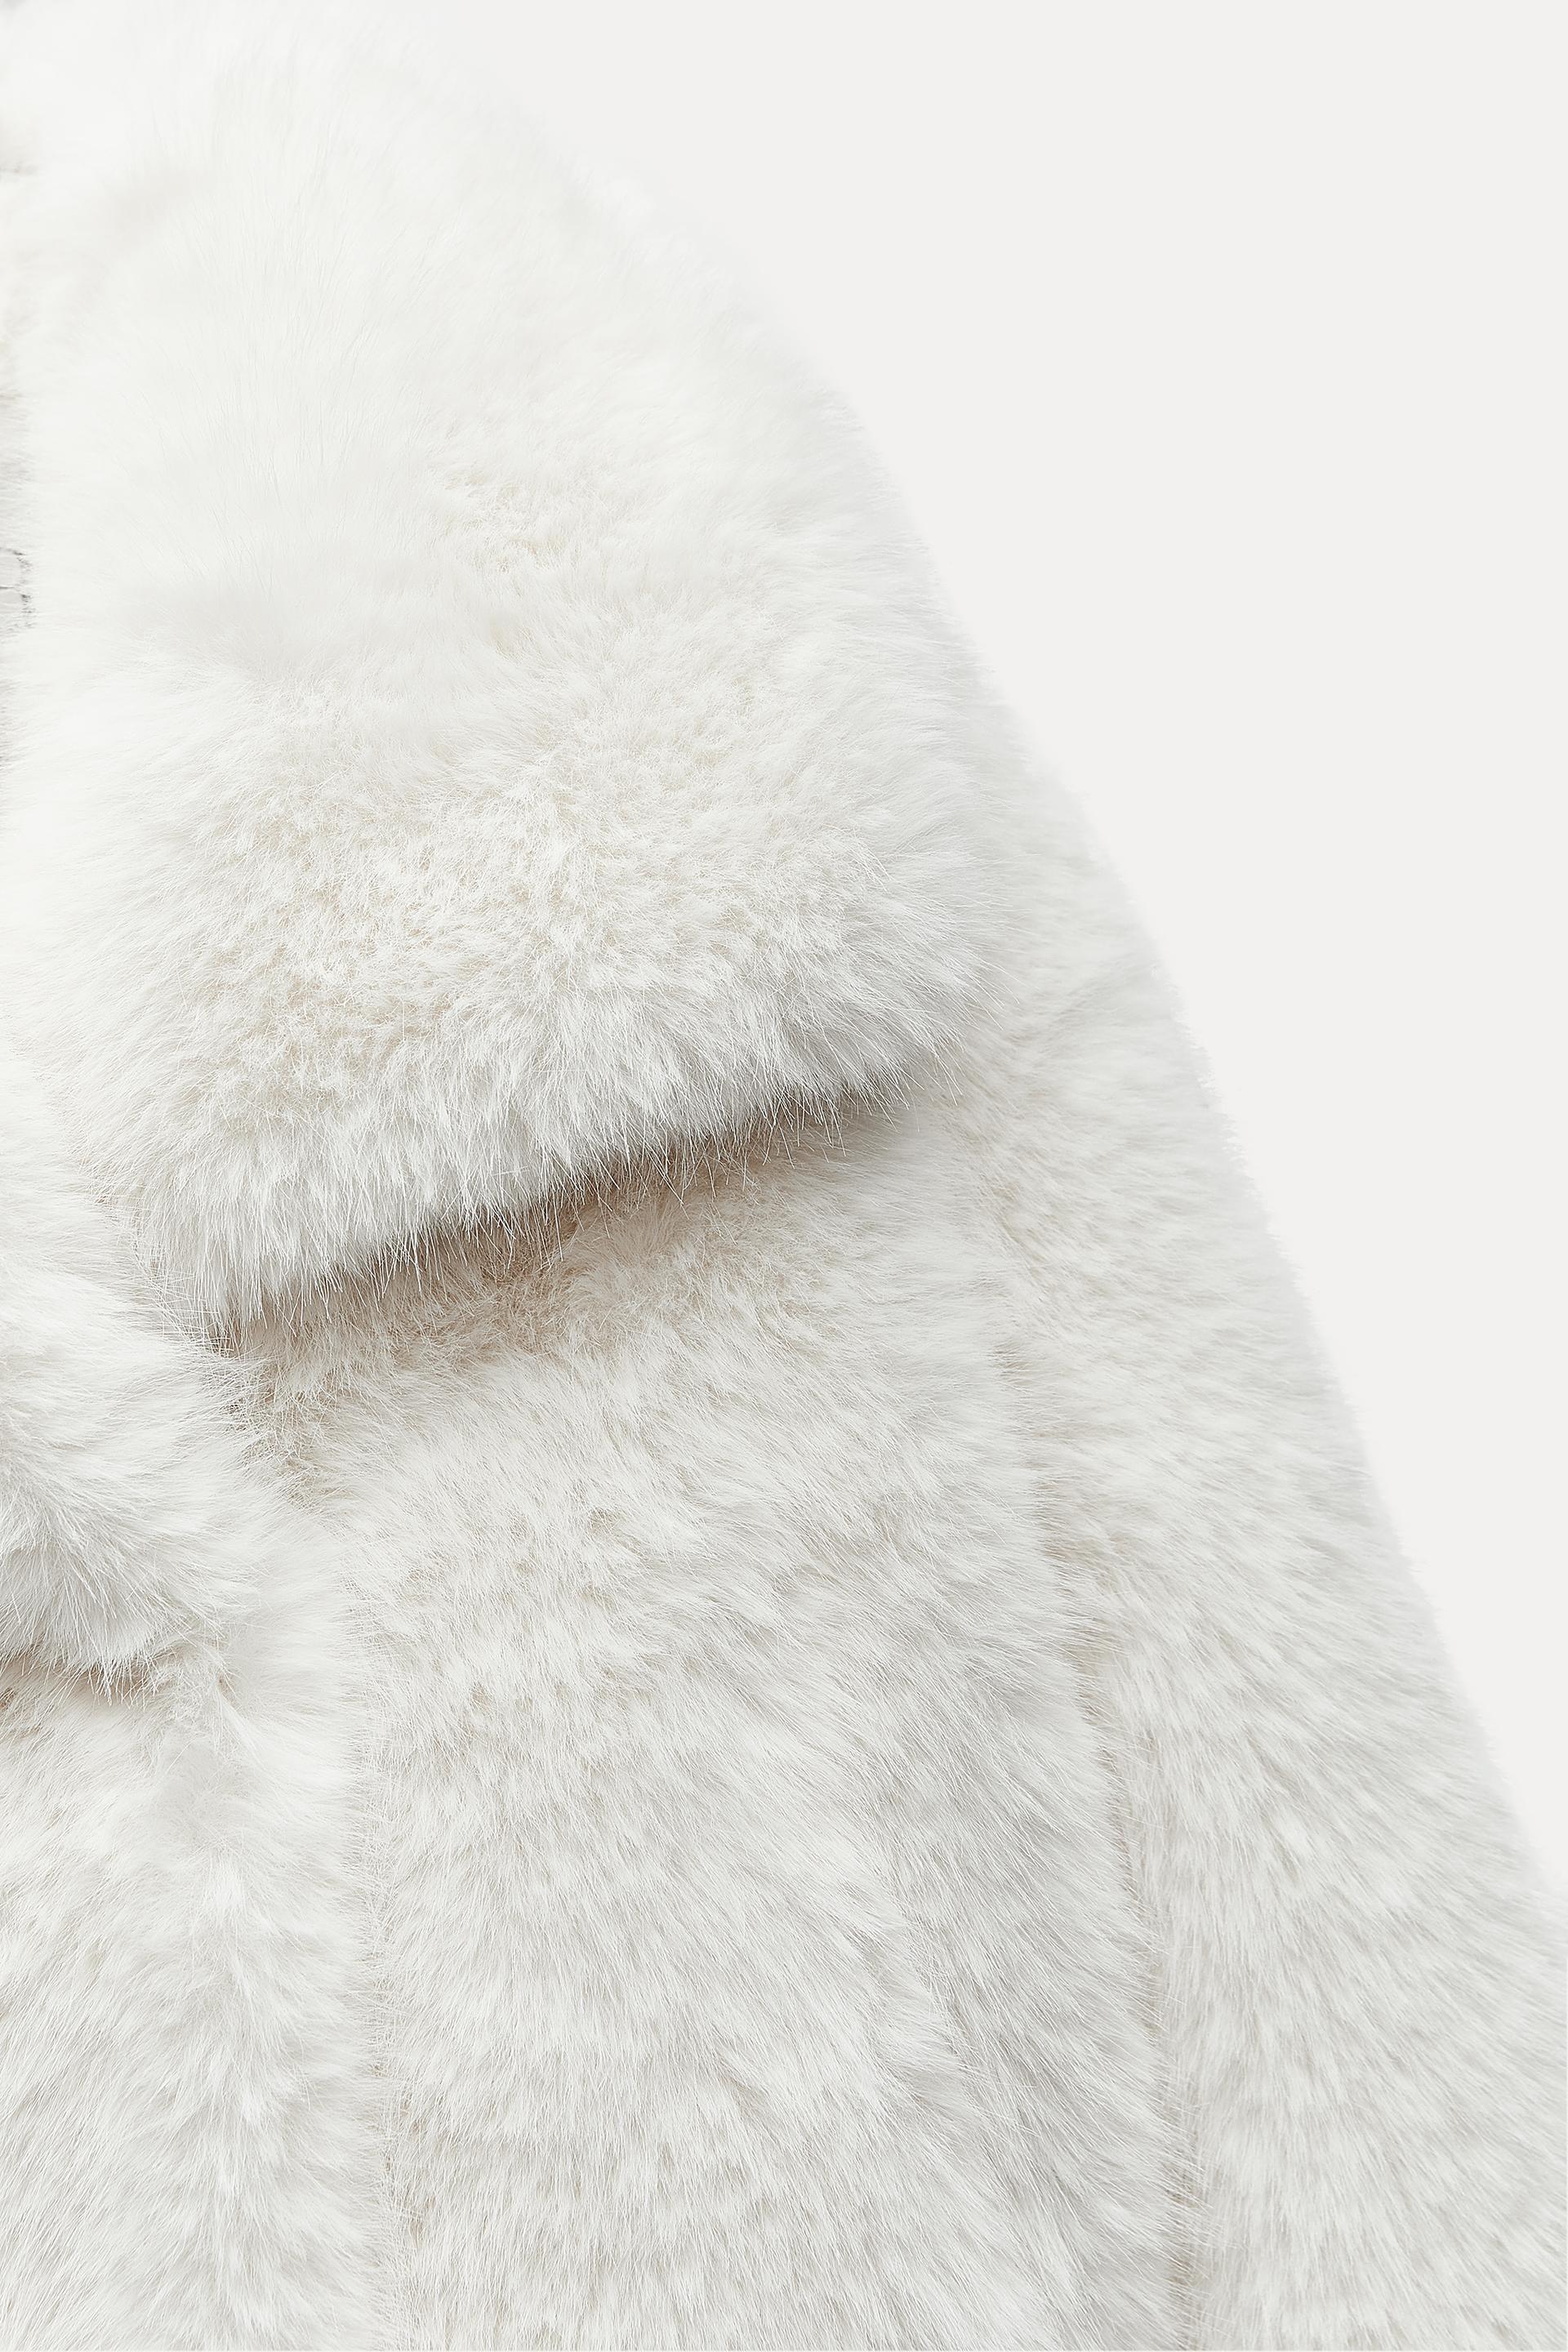 Zara faux fur 🤎 Ref: 4360/240 Zara cap 💙 Ref: 0653/305 Link in a  highlights 💫 . . . . #fauxfur #winteroutfit #hermesbag #fauxfur